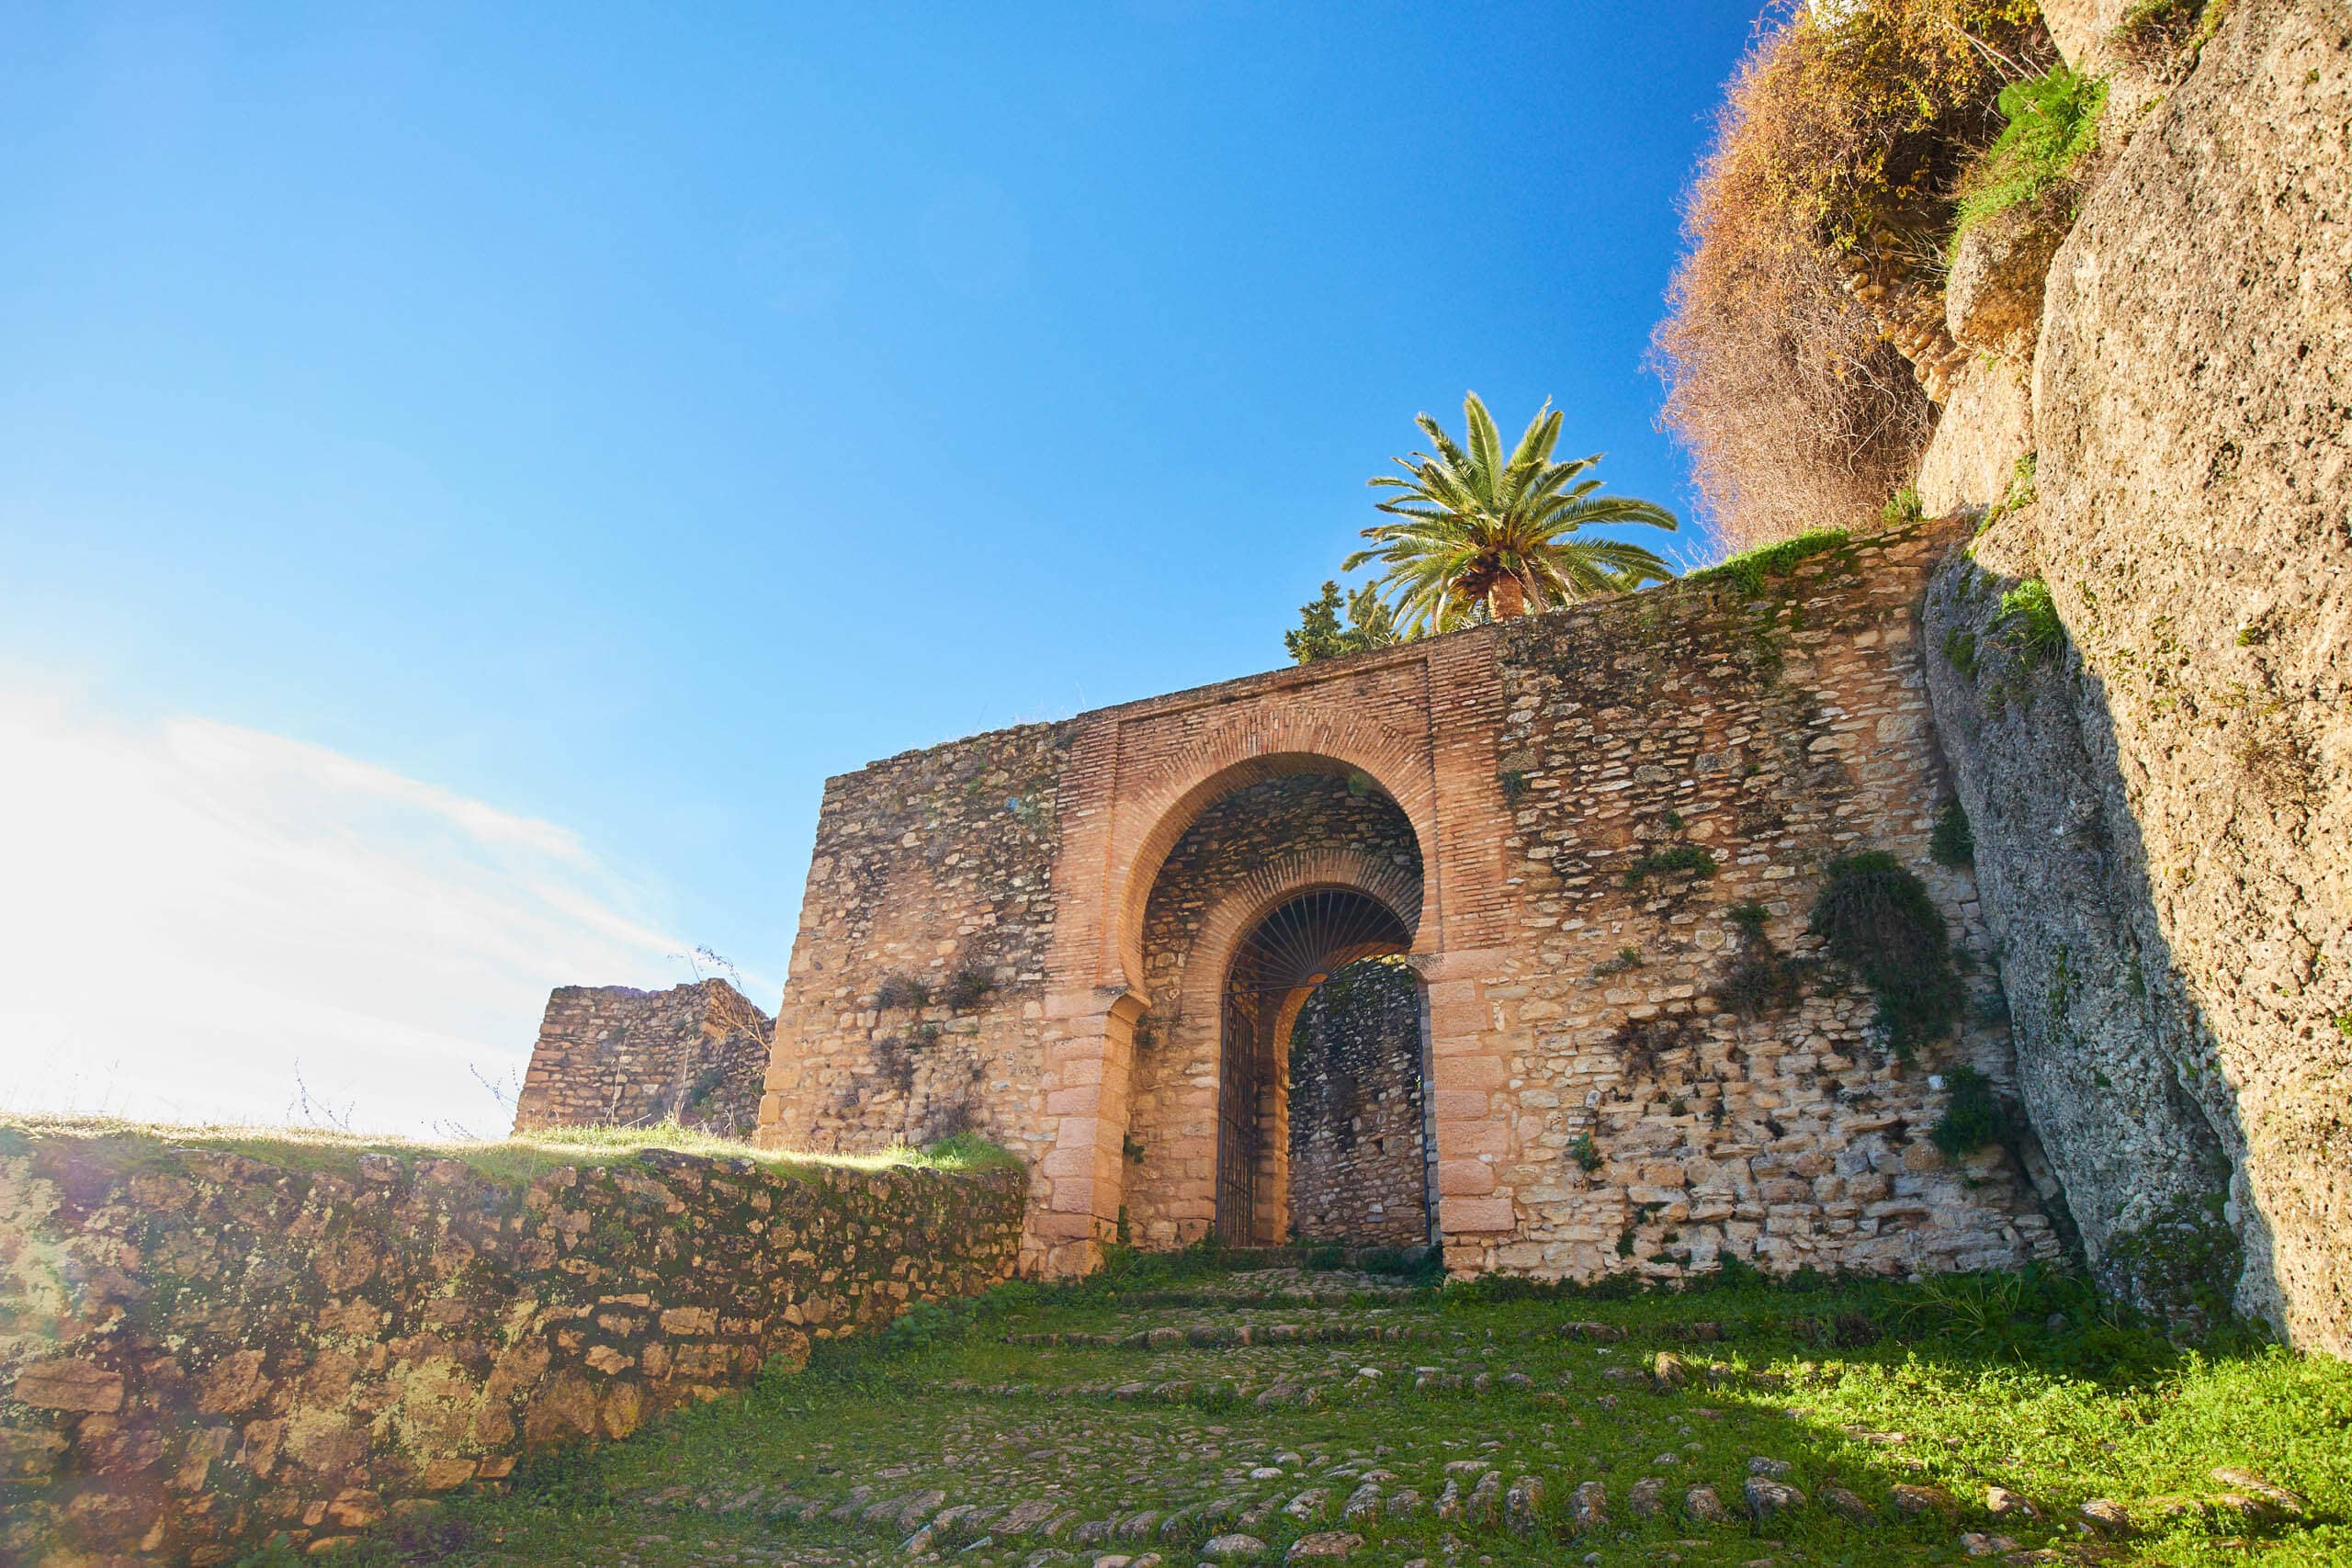 Cijara gate and walls of Ronda